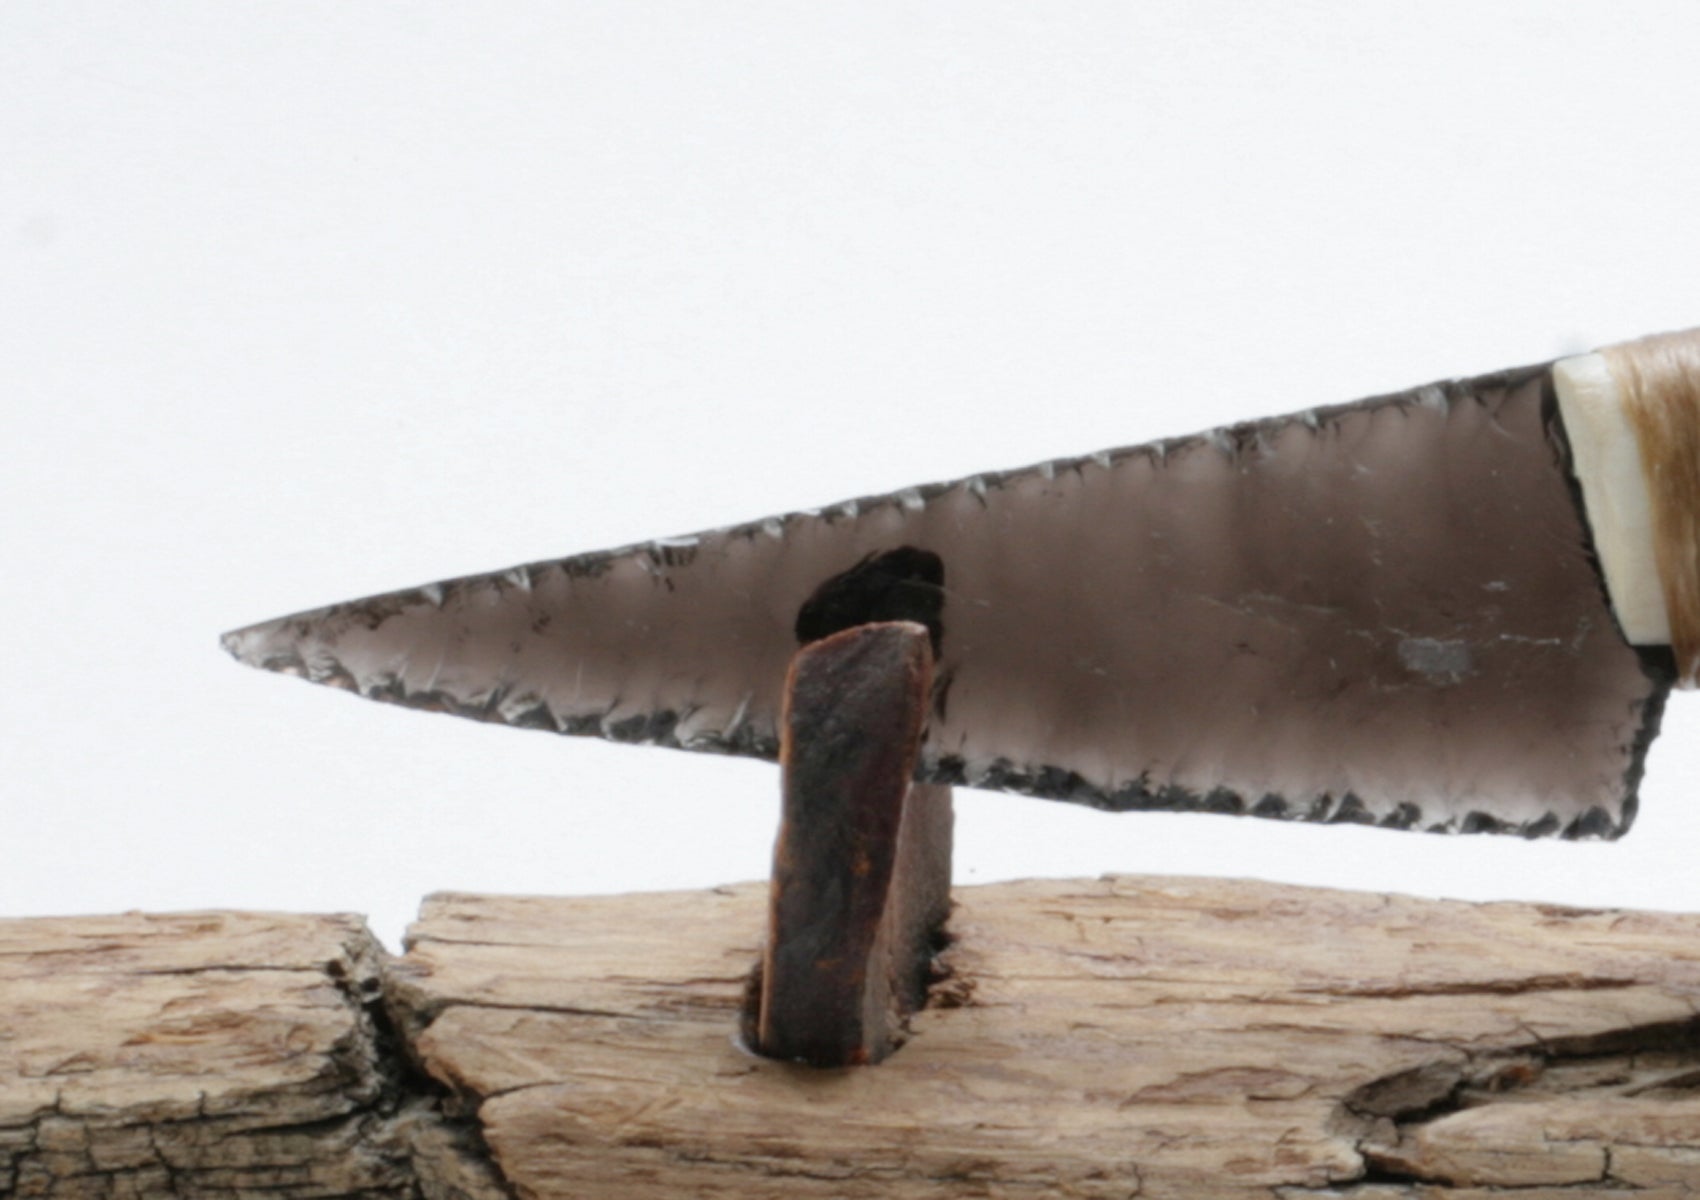 Transparent Obsidian Knife with Deer Antler Handle